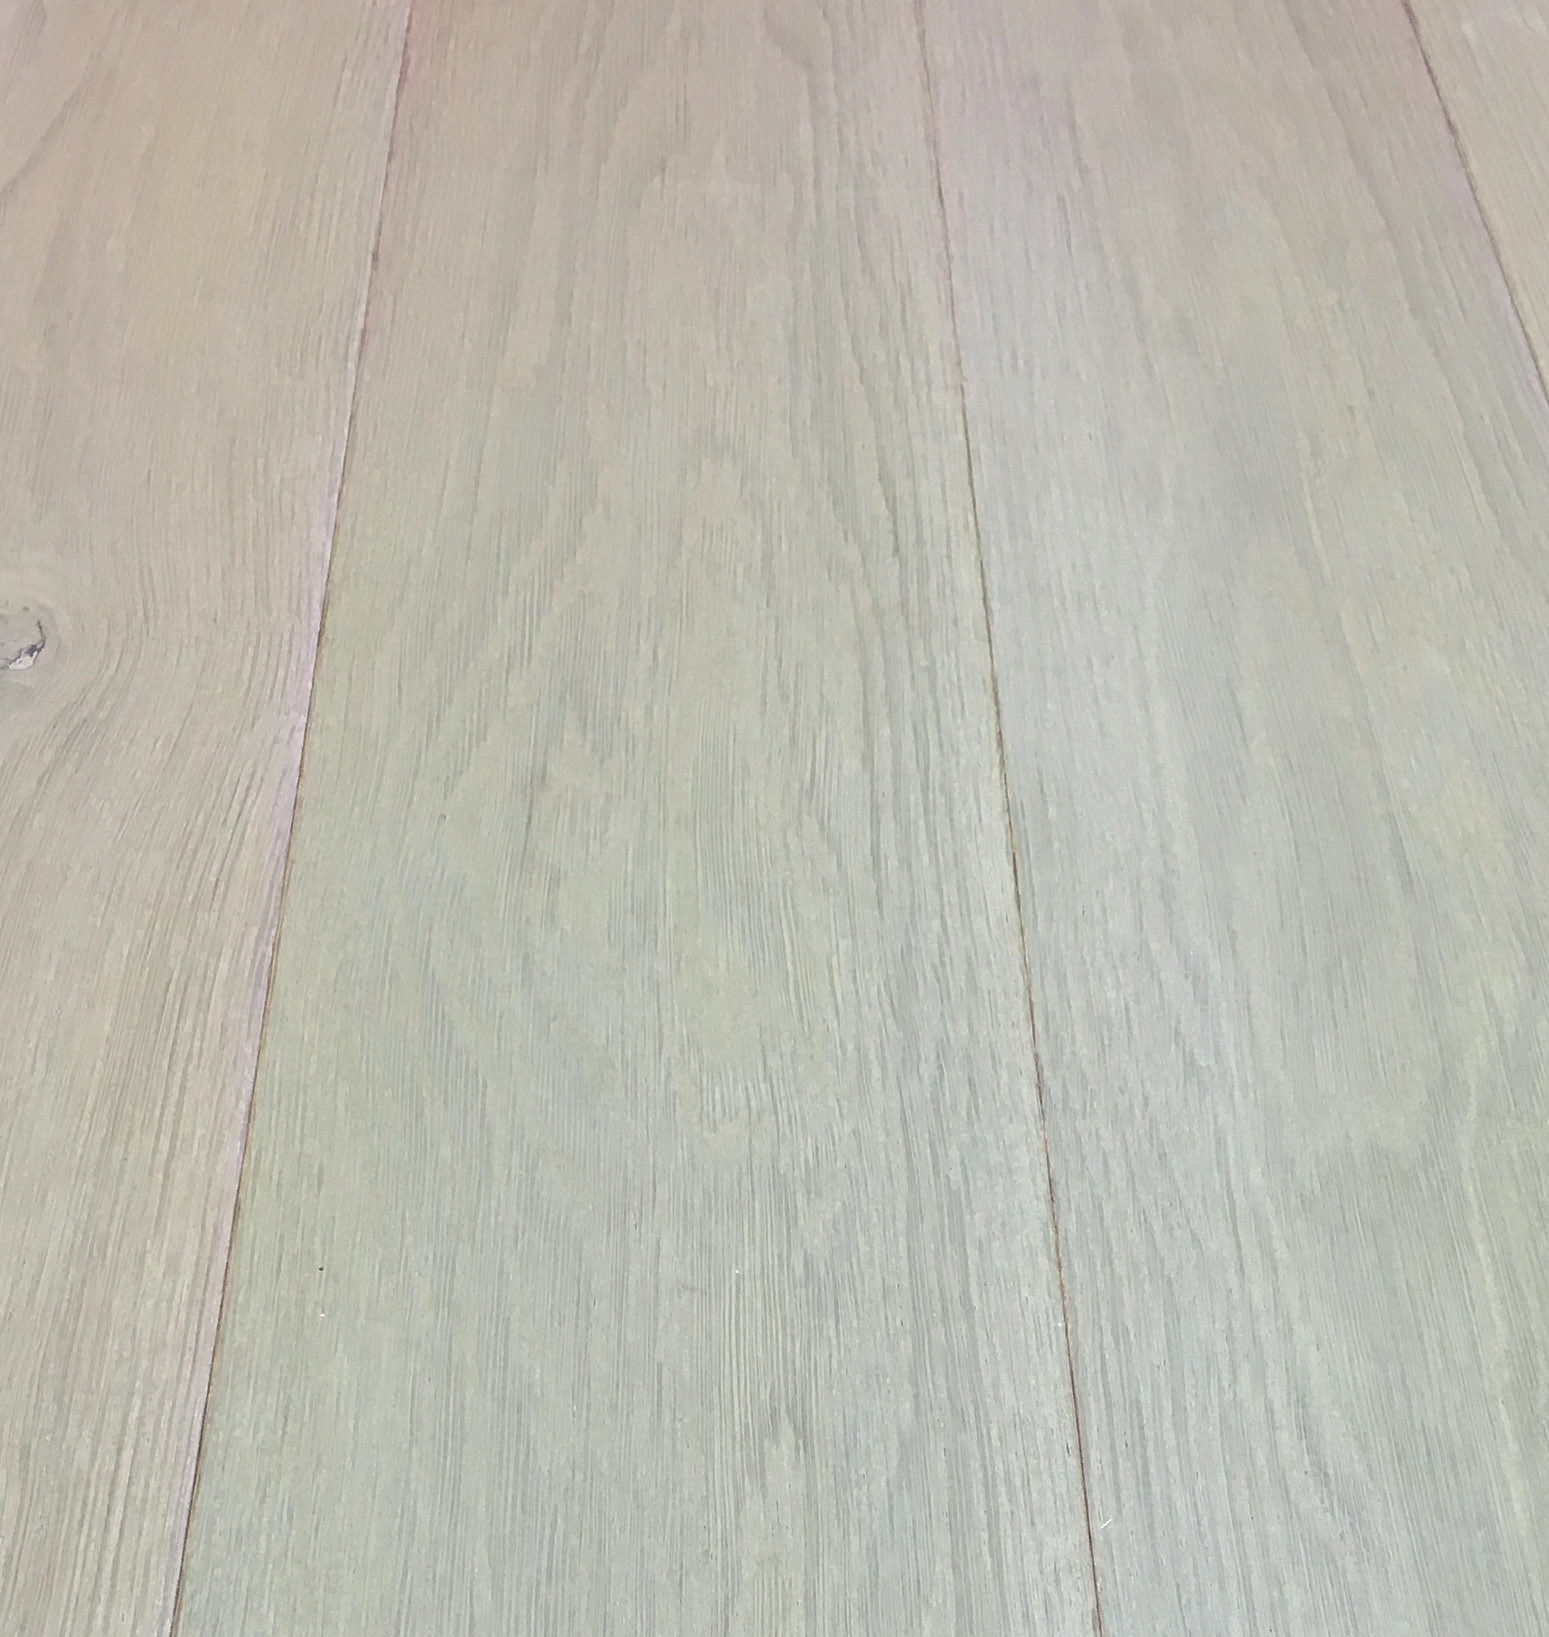 Gammeldags Träsåpa är speciellt framtagen för träytor som ex. golv. Den är baserad på sojafettsyra vilket återfettar träet ger en skonsam rengöring utan att torka ut.